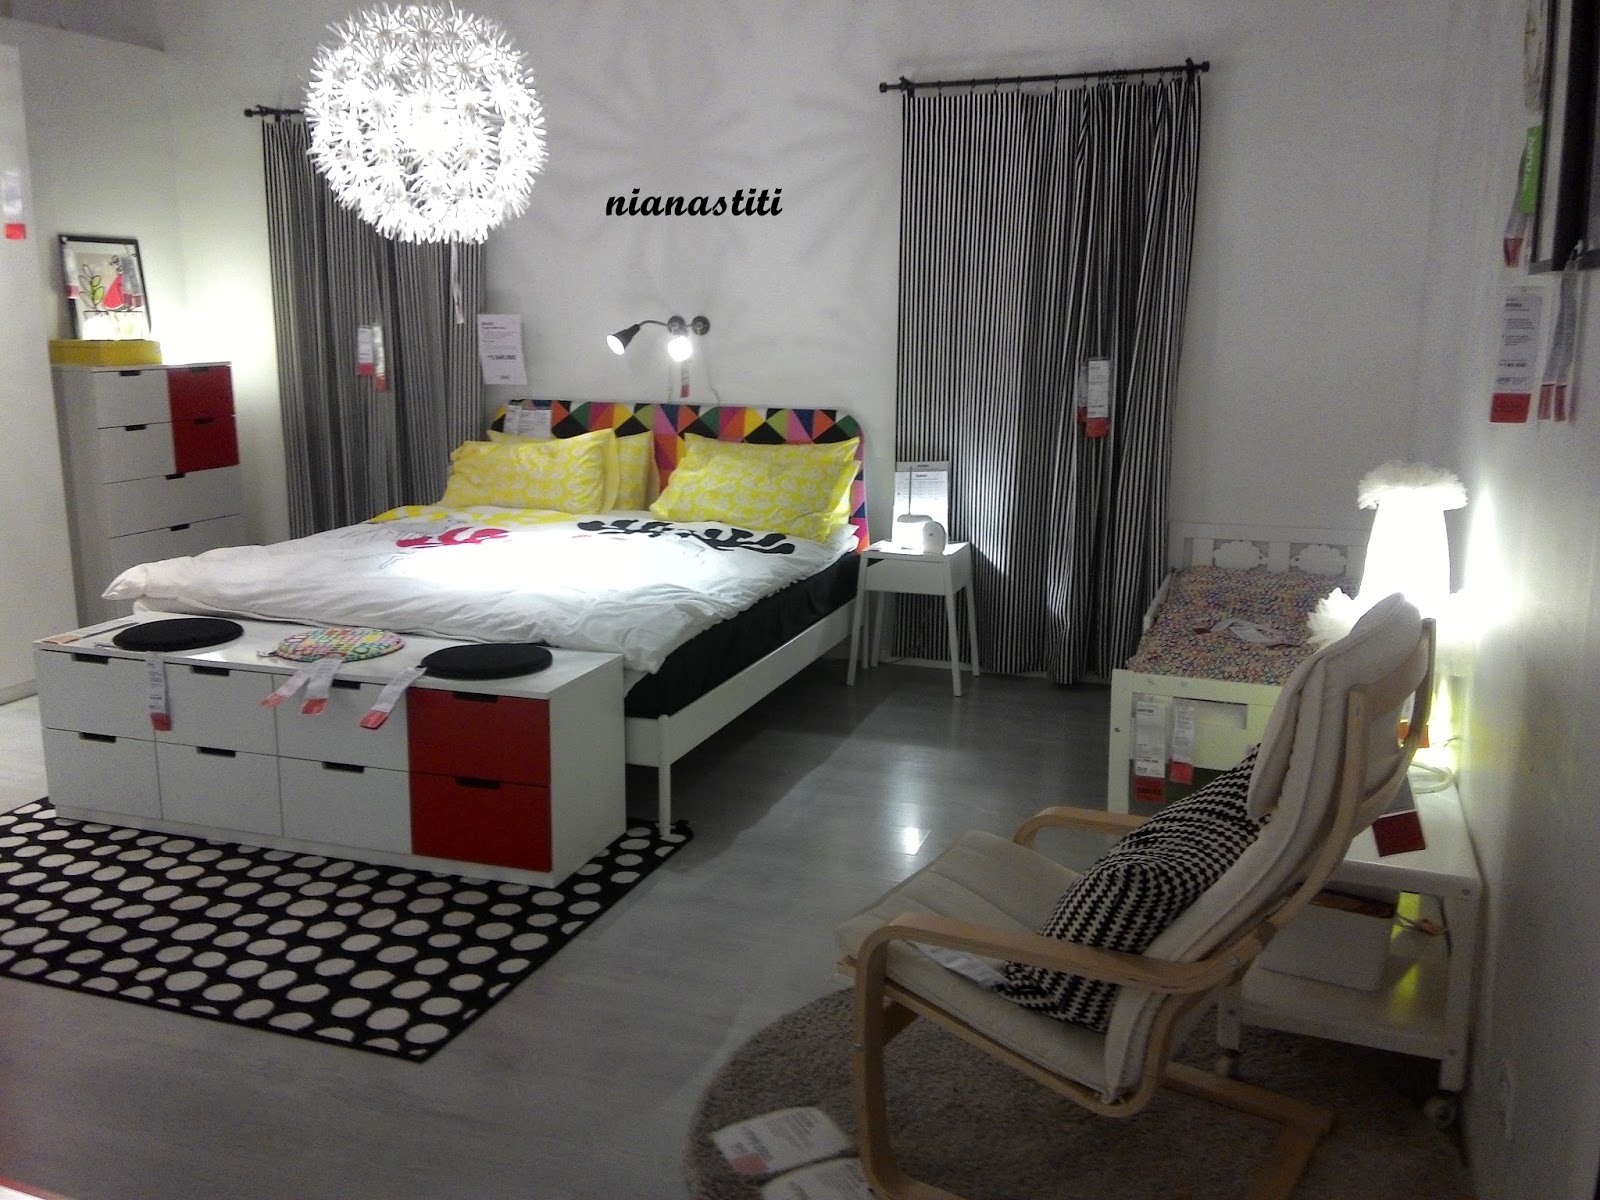 Cari Inspirasi Desain Interior Rumah  di IKEA  LIVING ROOM